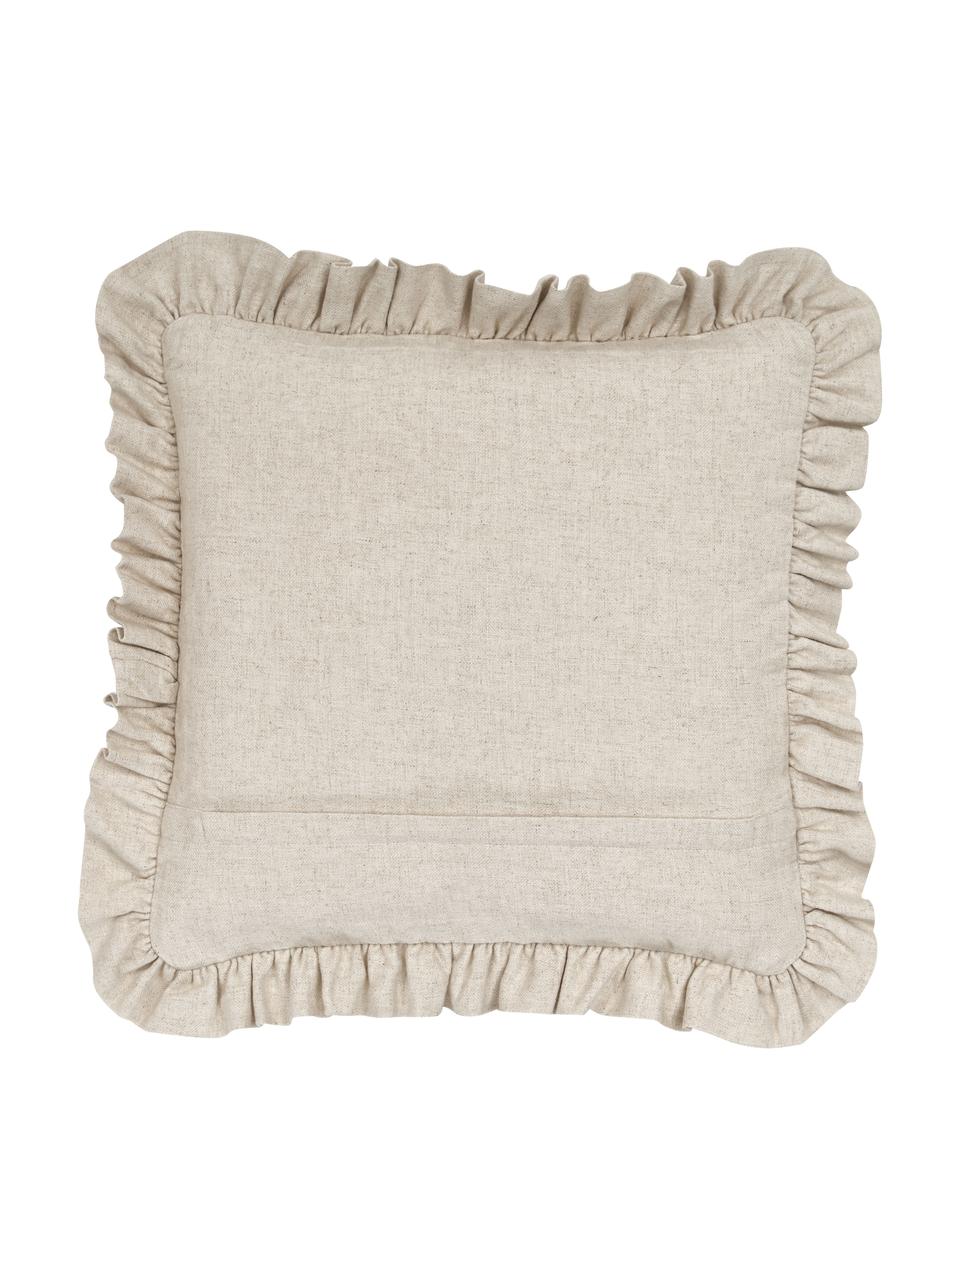 Poszewka na poduszkę z falbanką Camille, 60% poliester, 25% bawełna, 15% len, Beżowy, S 45 x D 45 cm